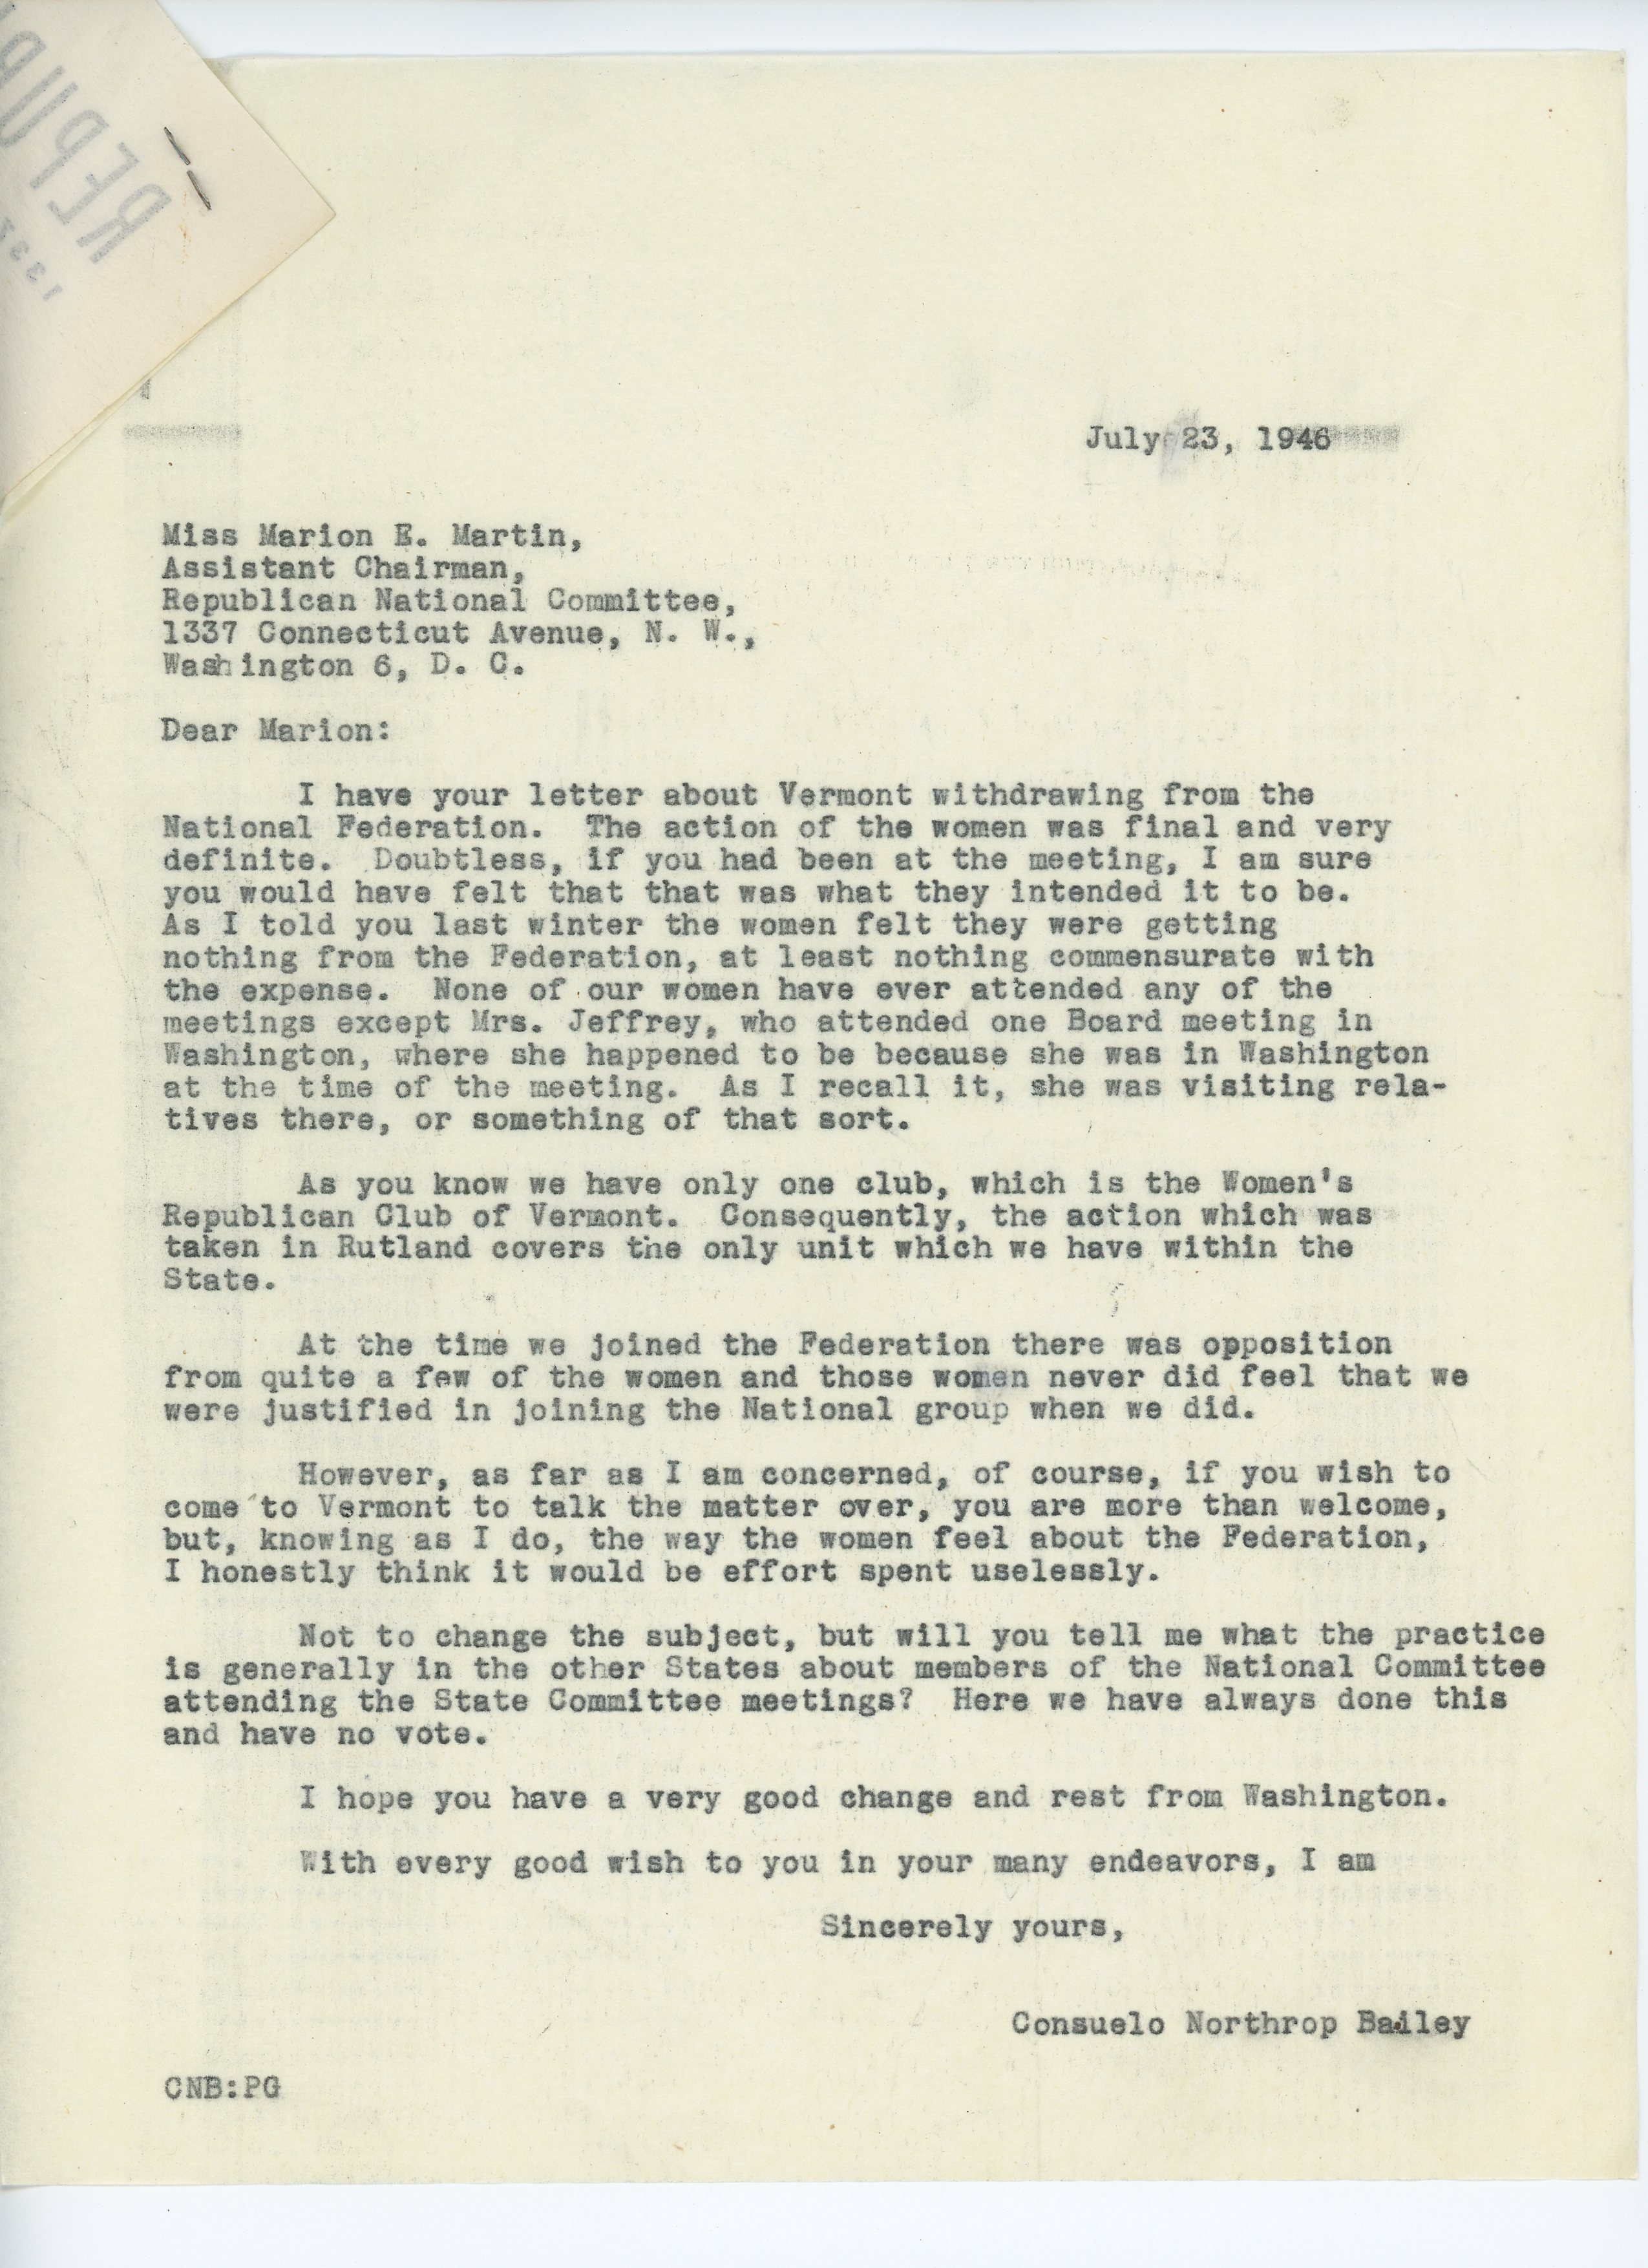 Consuelo N. Bailey to Marion E. Martin 1946 July 23